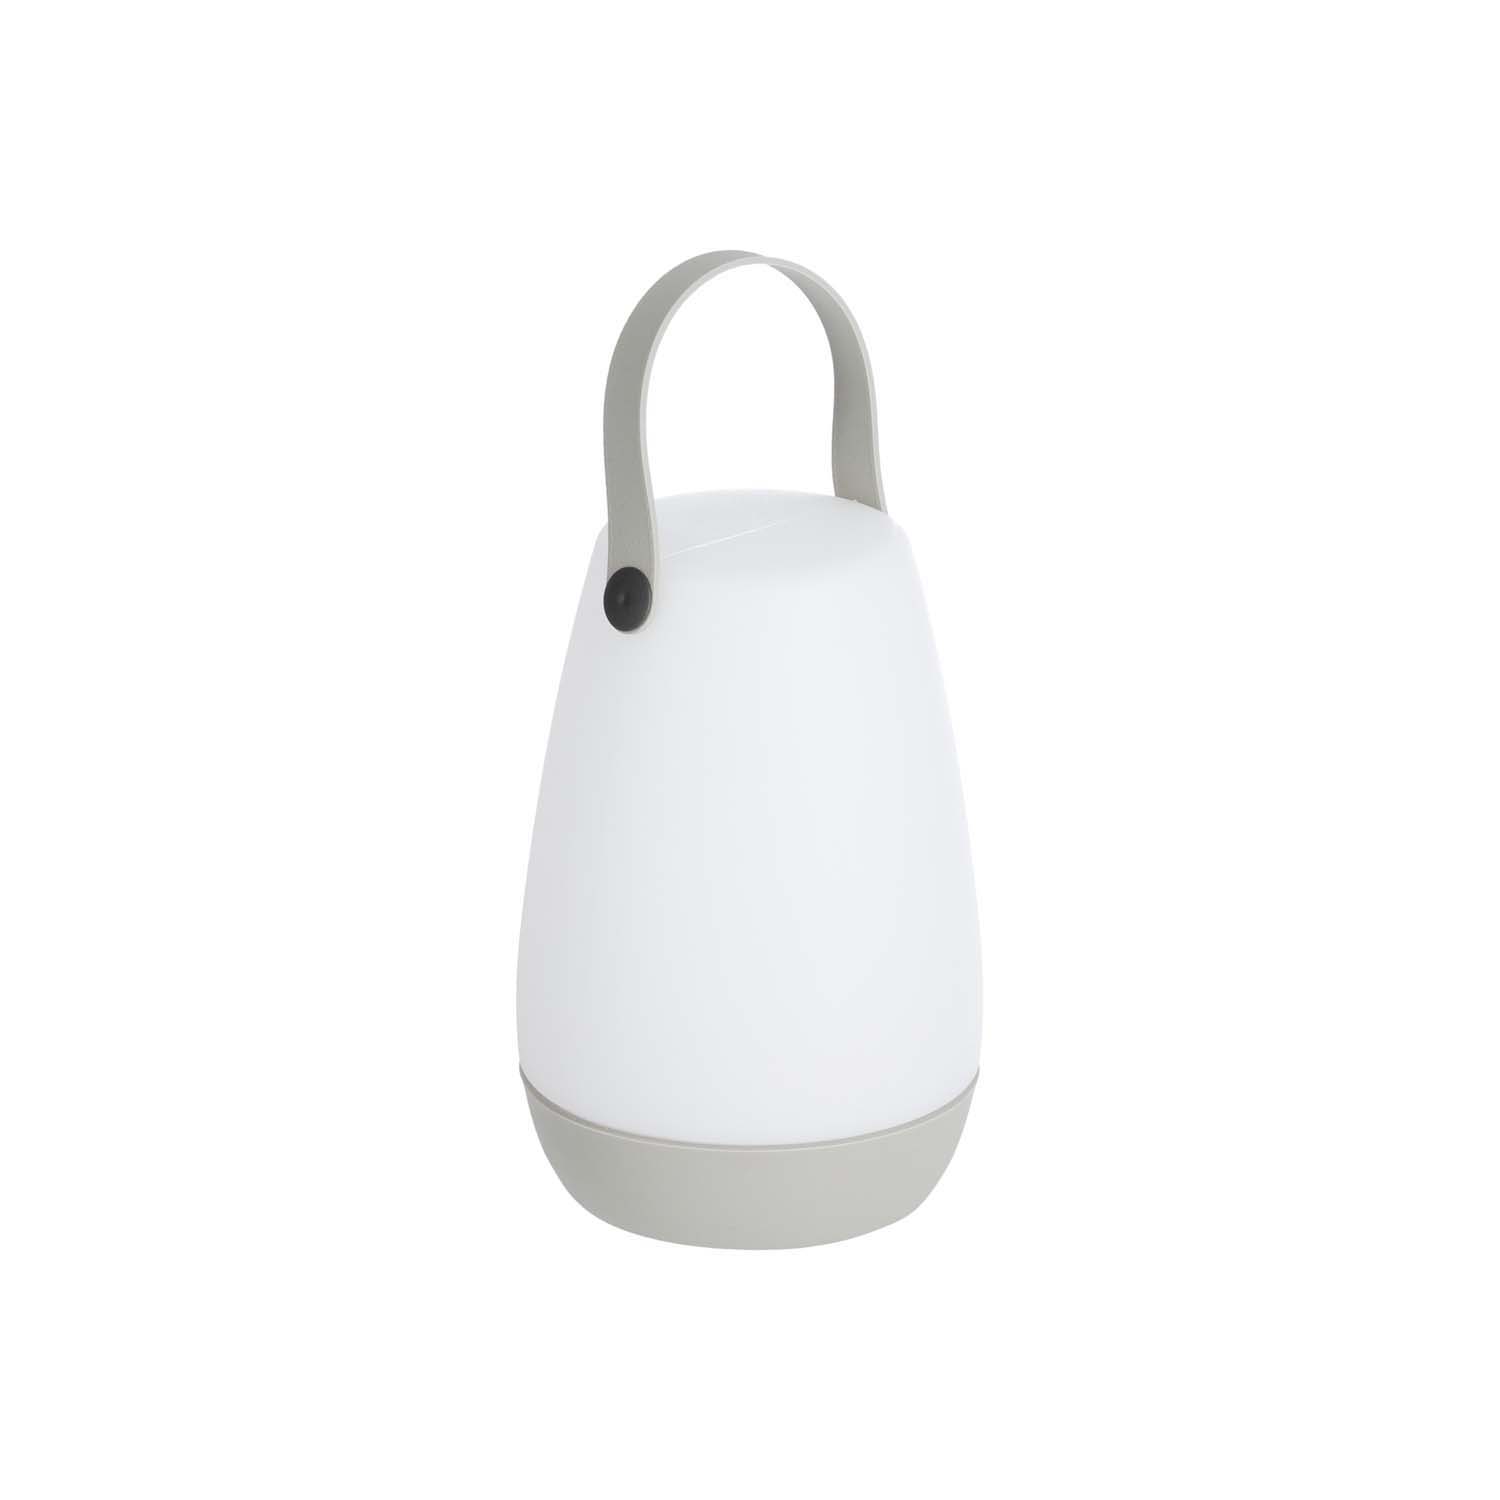 Køb LAFORMA Dianela bordlampe, ledningsfri – hvidt polyethylen og gråt kunstlæder